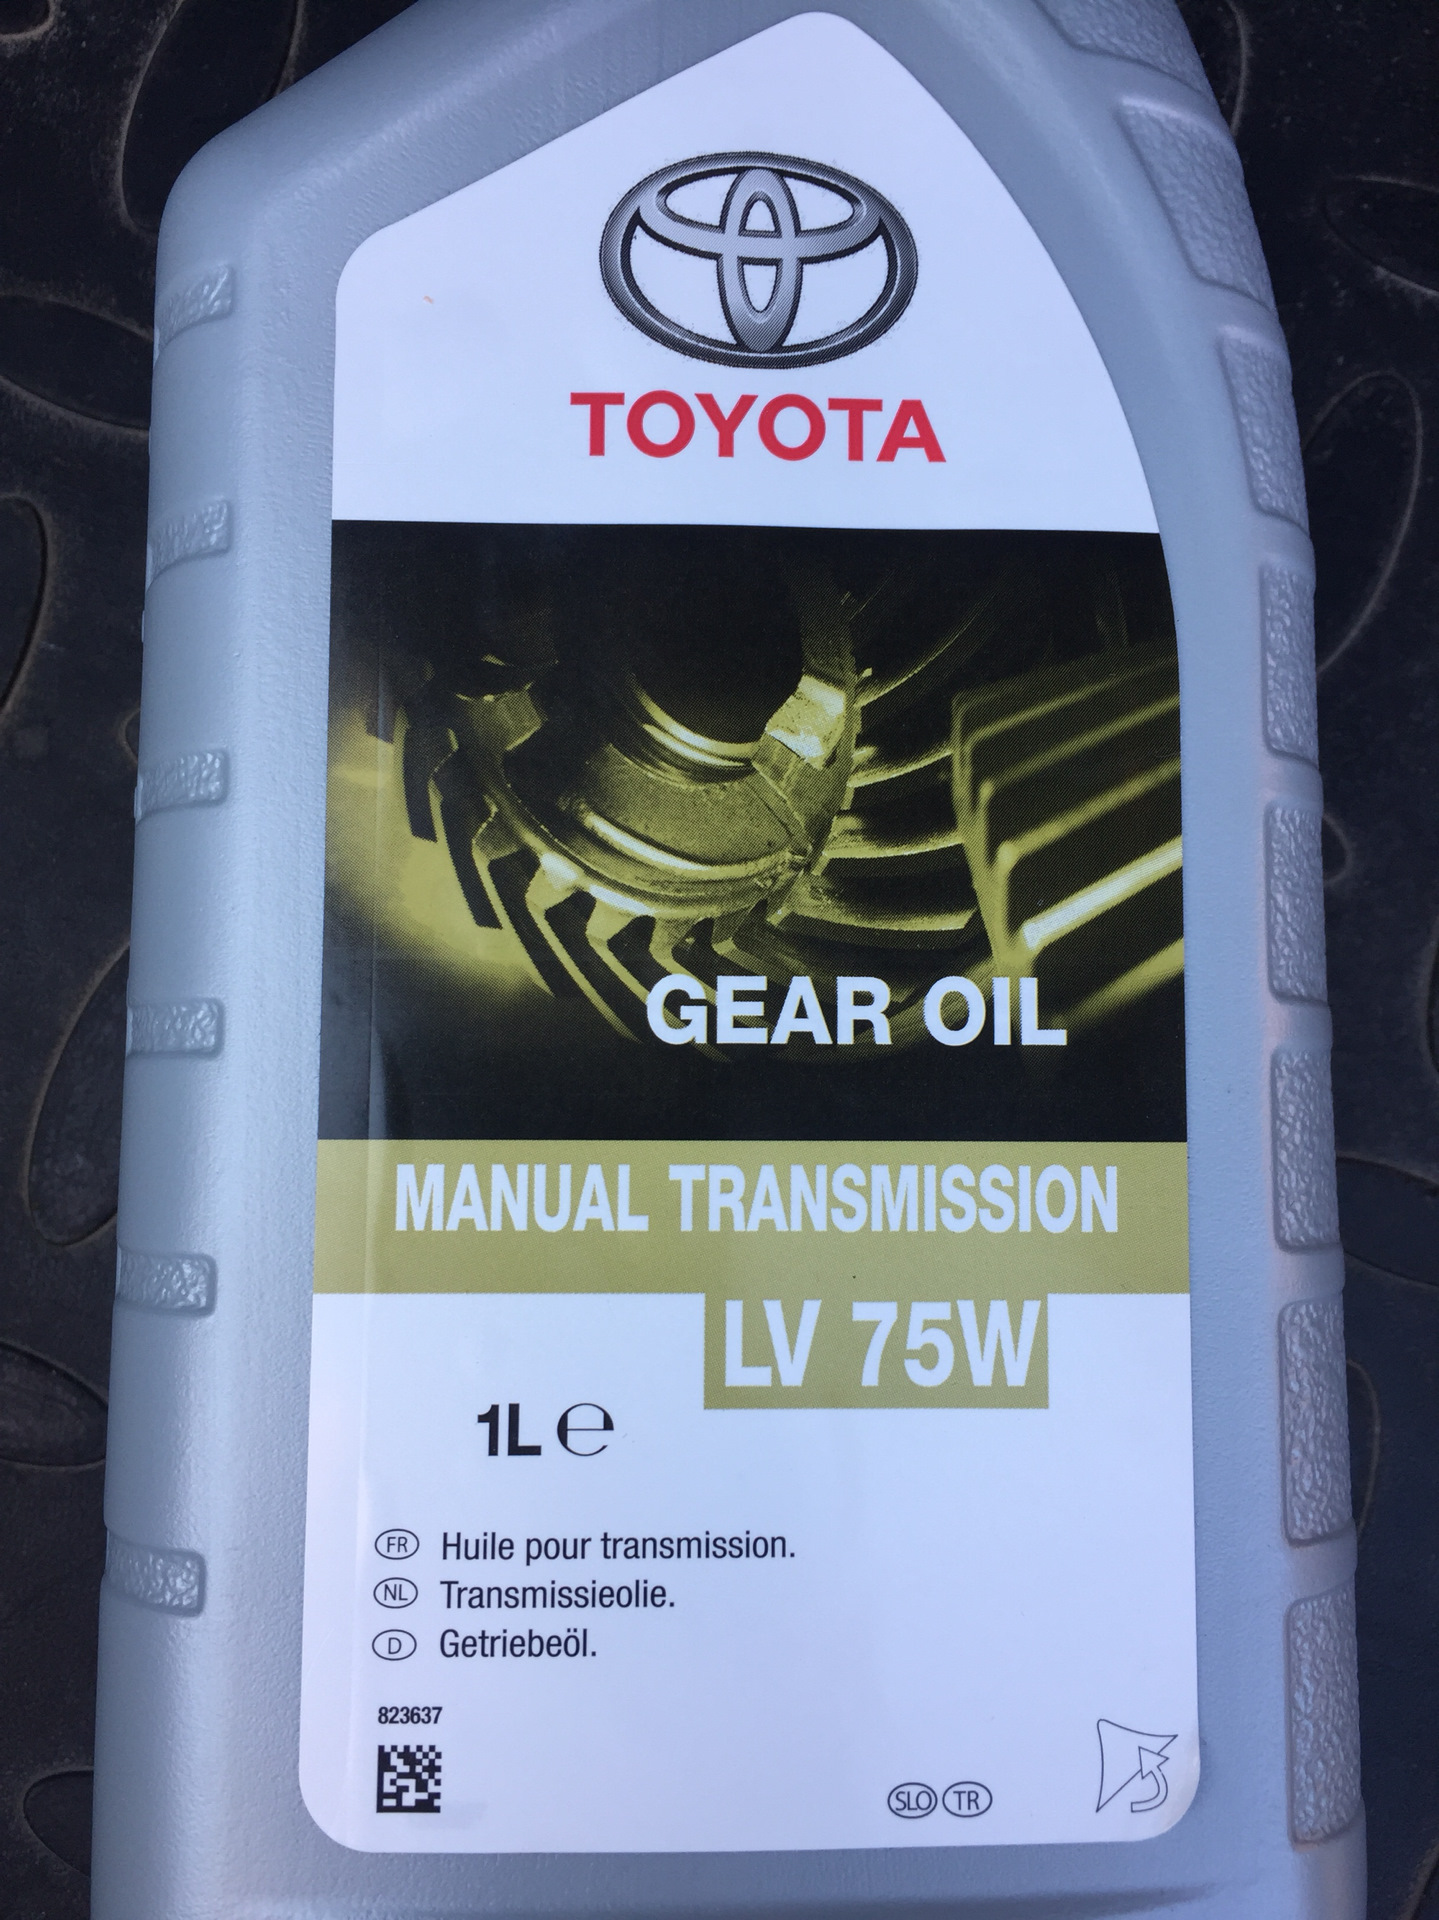 Масло lv 75w. Toyota lv 75w артикул. Lv 75w Toyota. Toyota Gear Oil lv 75w MT. Toyota manual transmission Gear Oil 75w.